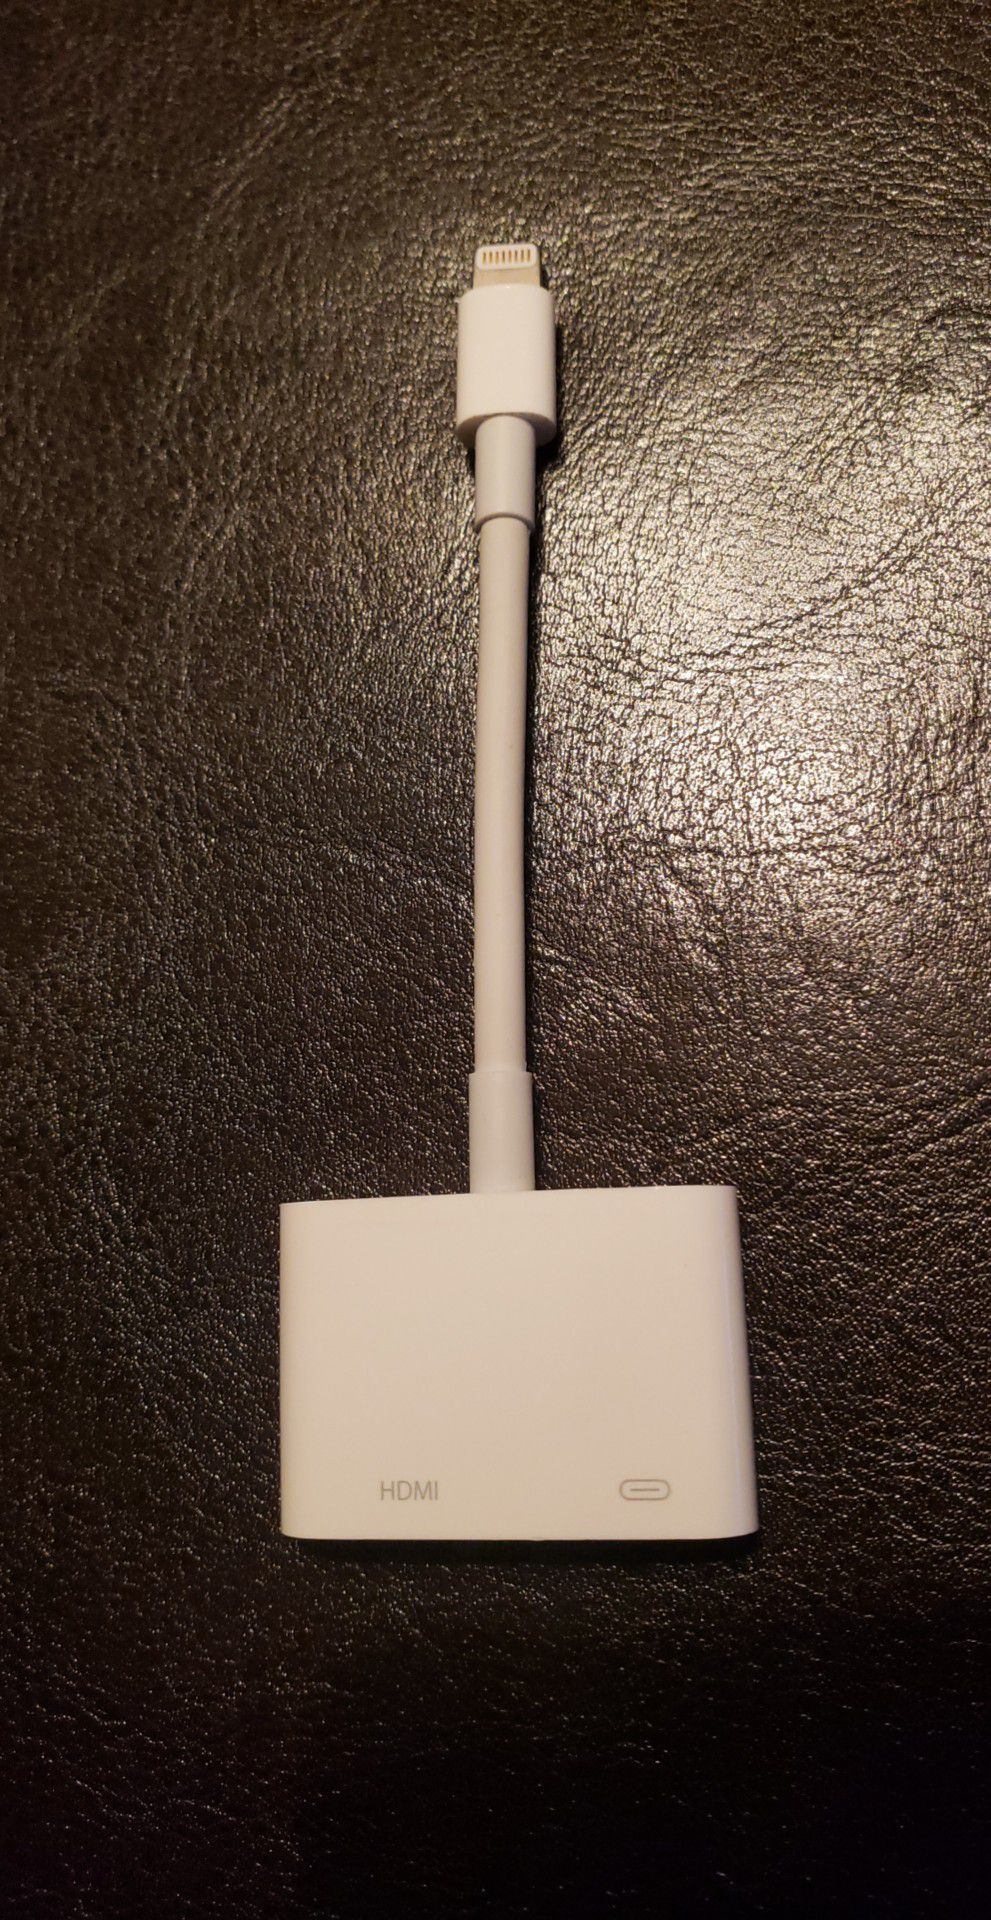 Apple digital av adapter